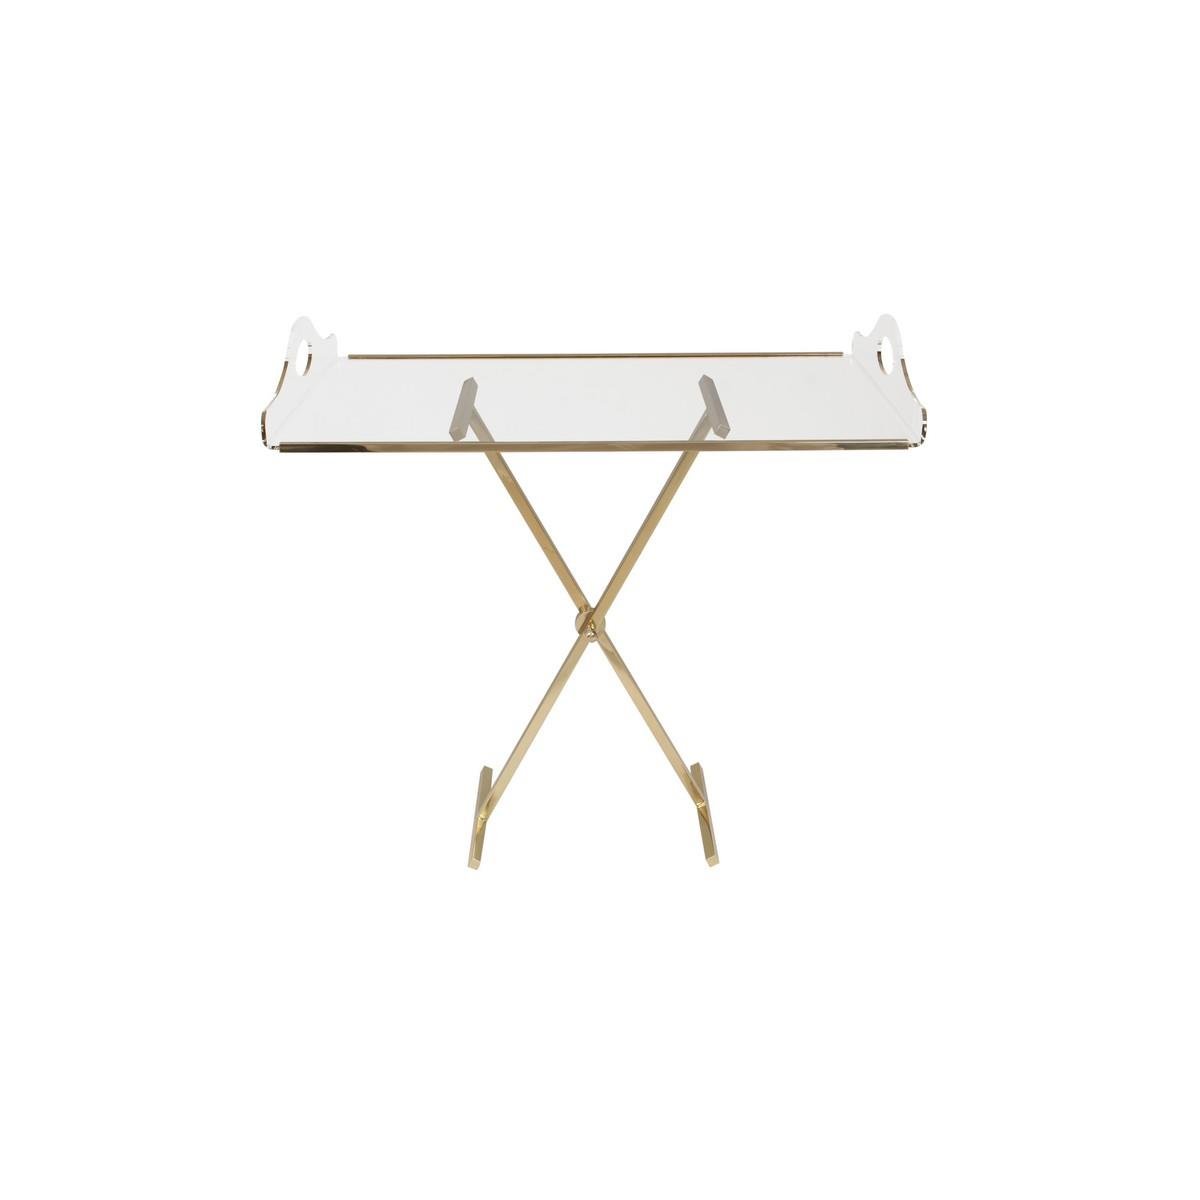 HK-Gold Foot Plexi Foldable Table